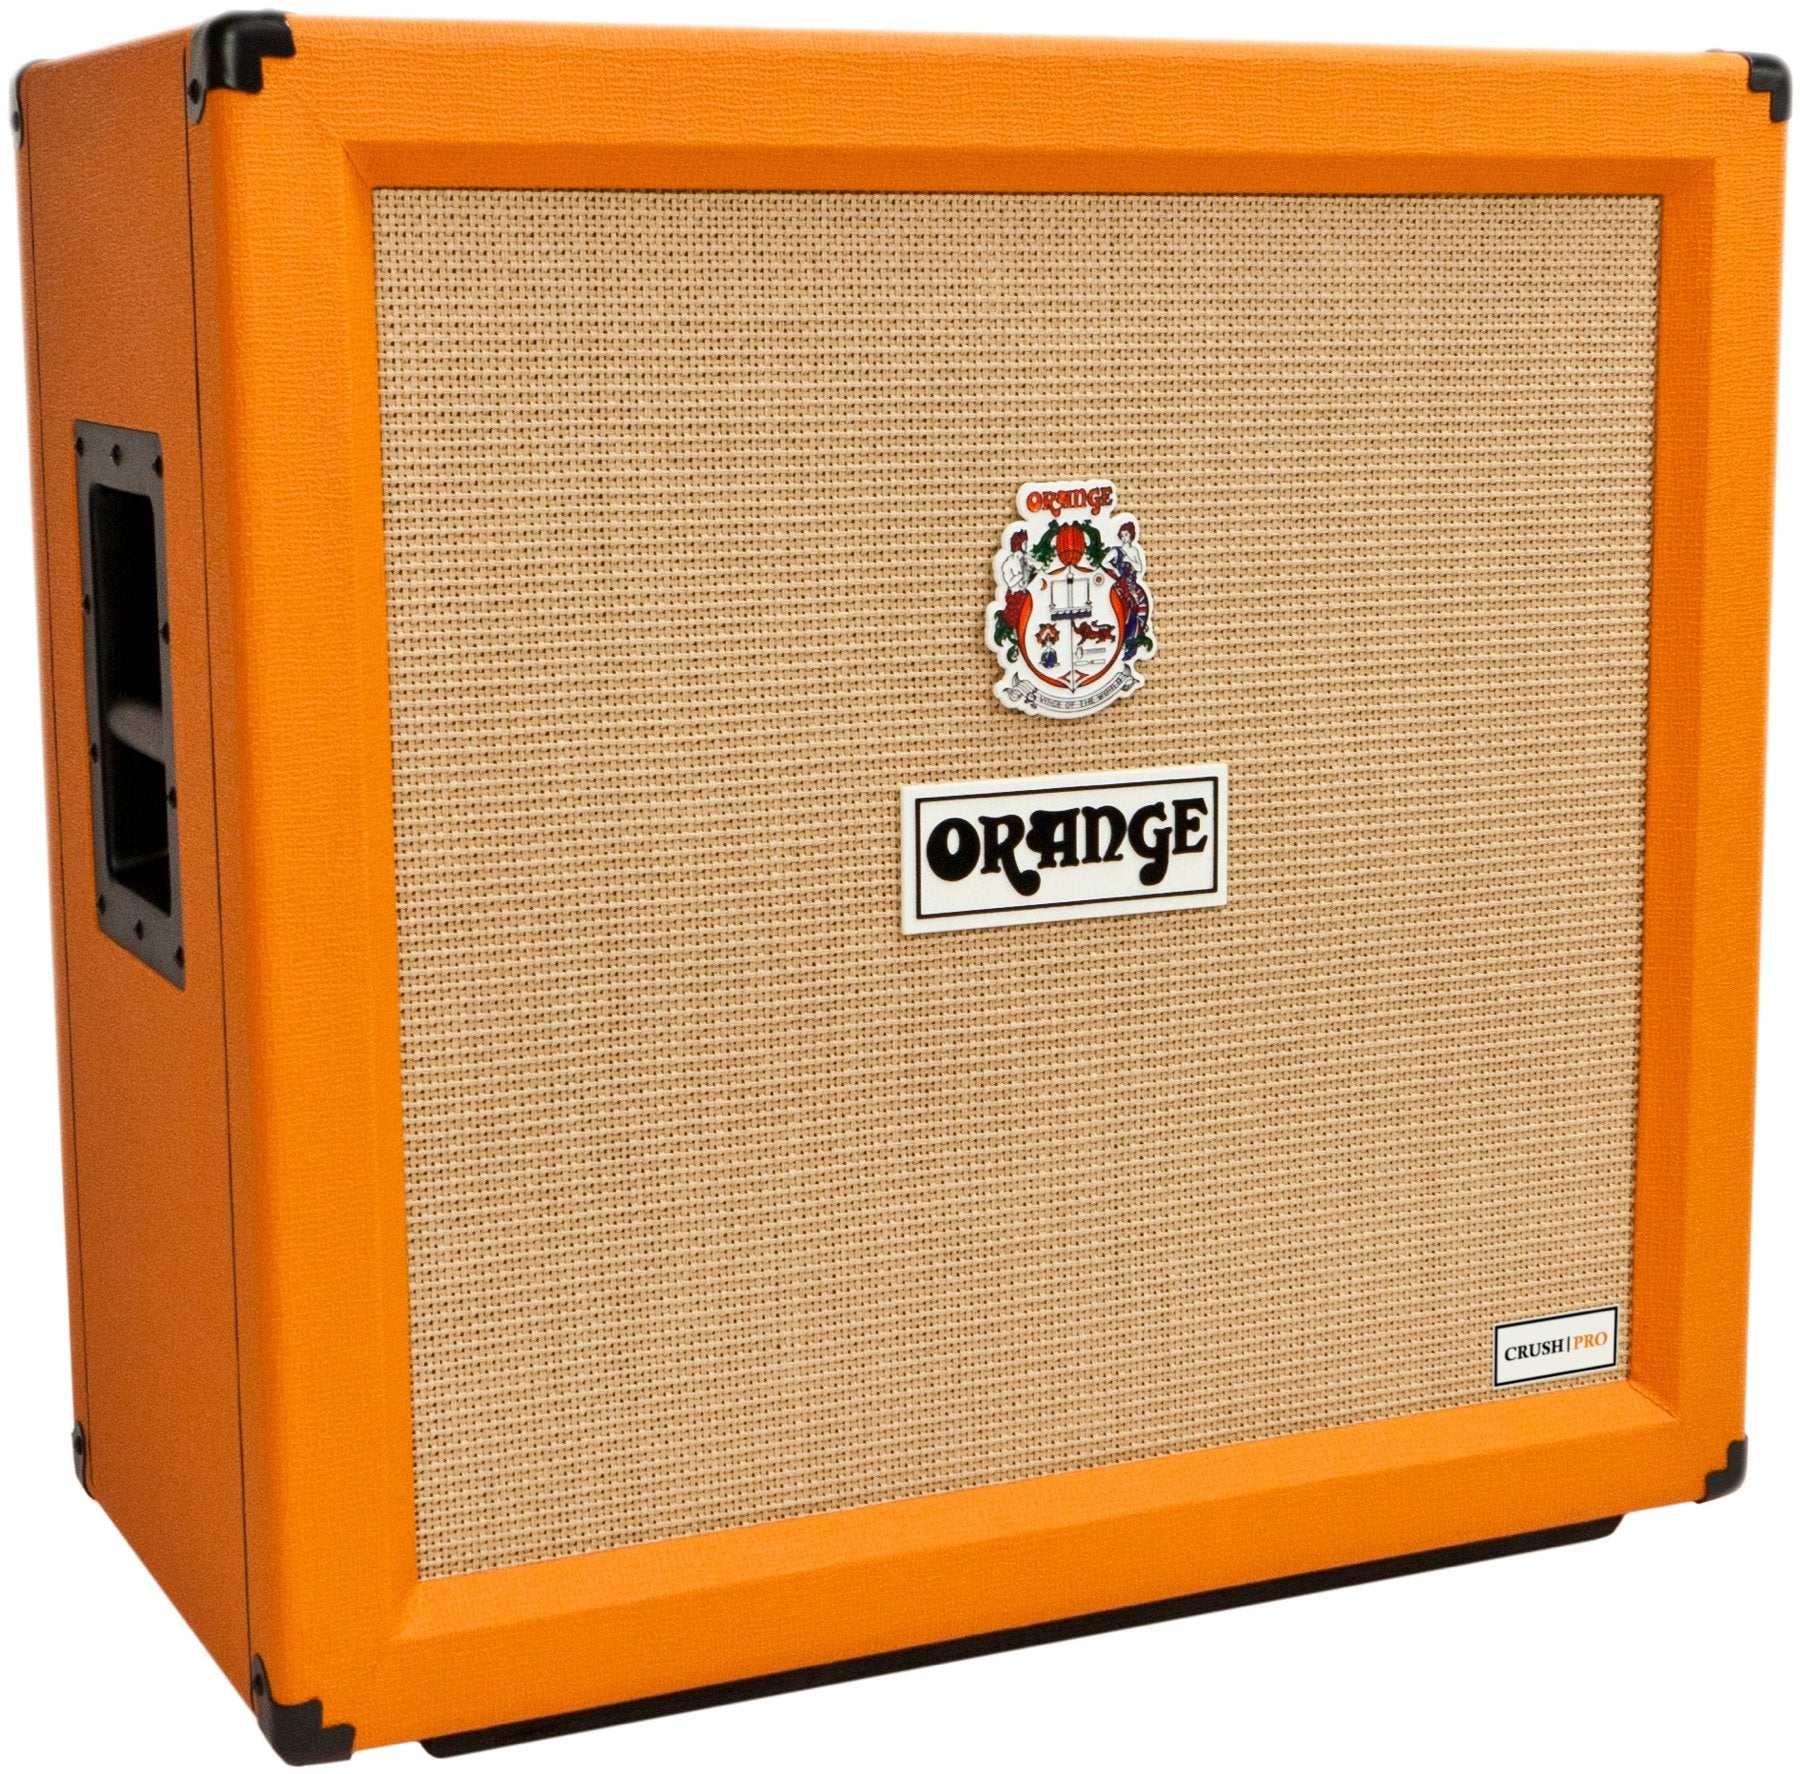 ORANGE CRPRO412 240-WATTS COMPACT GUITAR SPEAKER, ORANGE, CABINET, orange-crpro412-240-watts-compact-guitar-speaker, ZOSO MUSIC SDN BHD